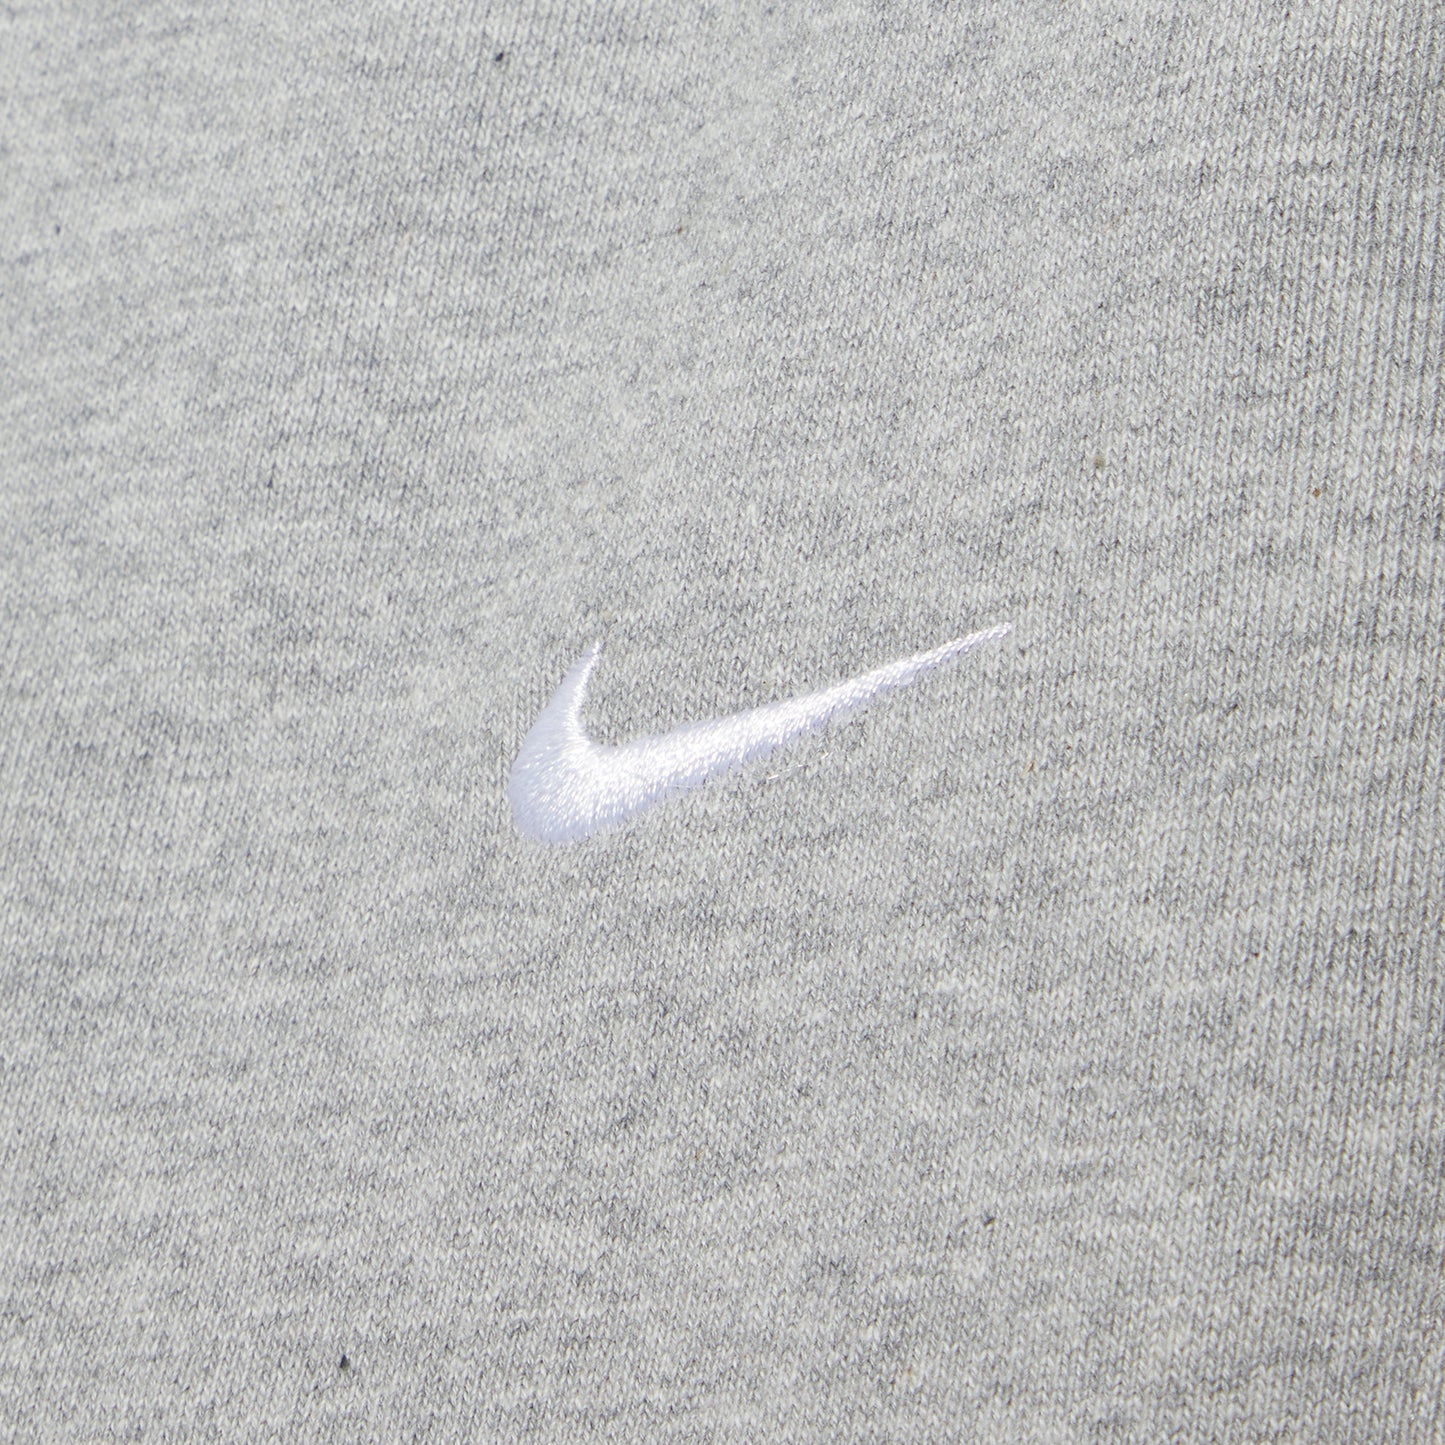 Nike Solo Swoosh Fleece Pants (Dark Grey Heather/White)